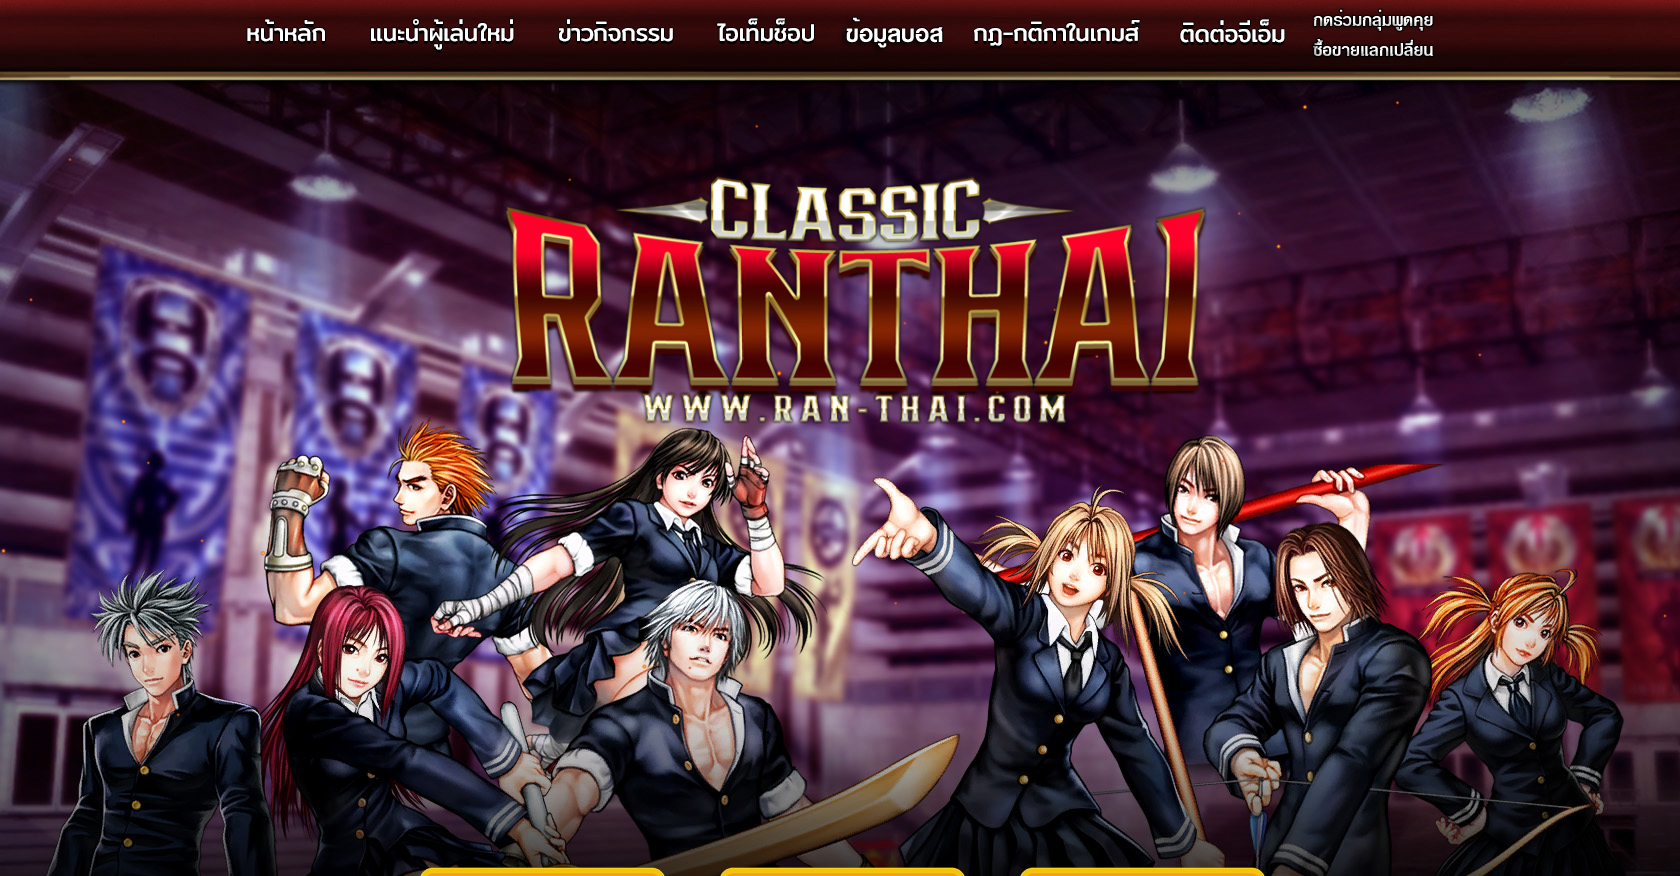 ran-thai.com